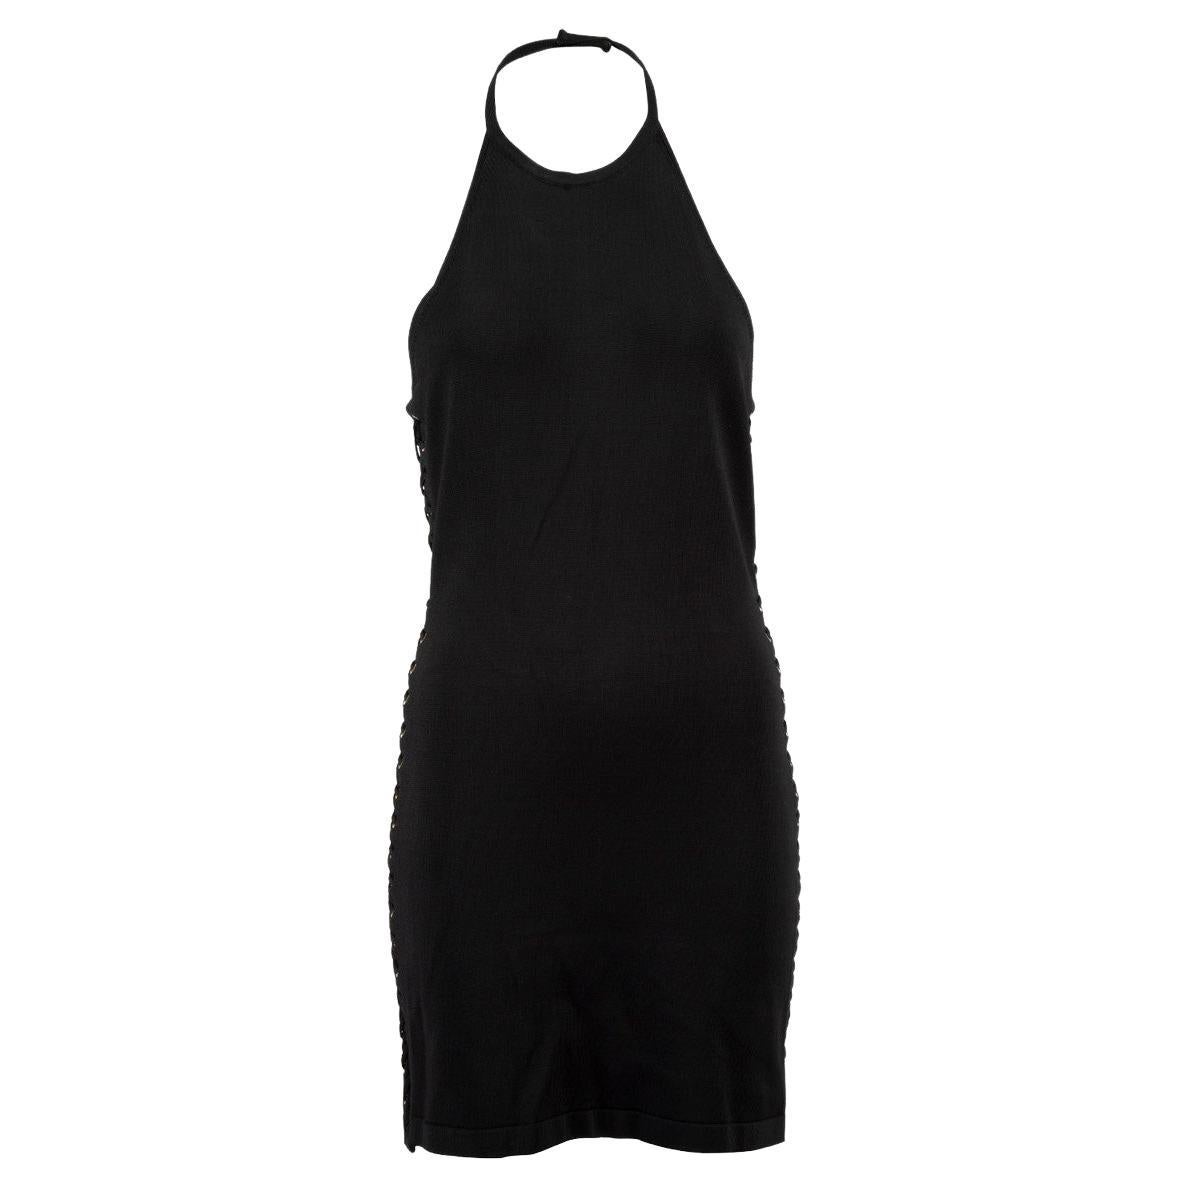 Pre-Loved Balmain Women's Black Halter Neck Mini Dress